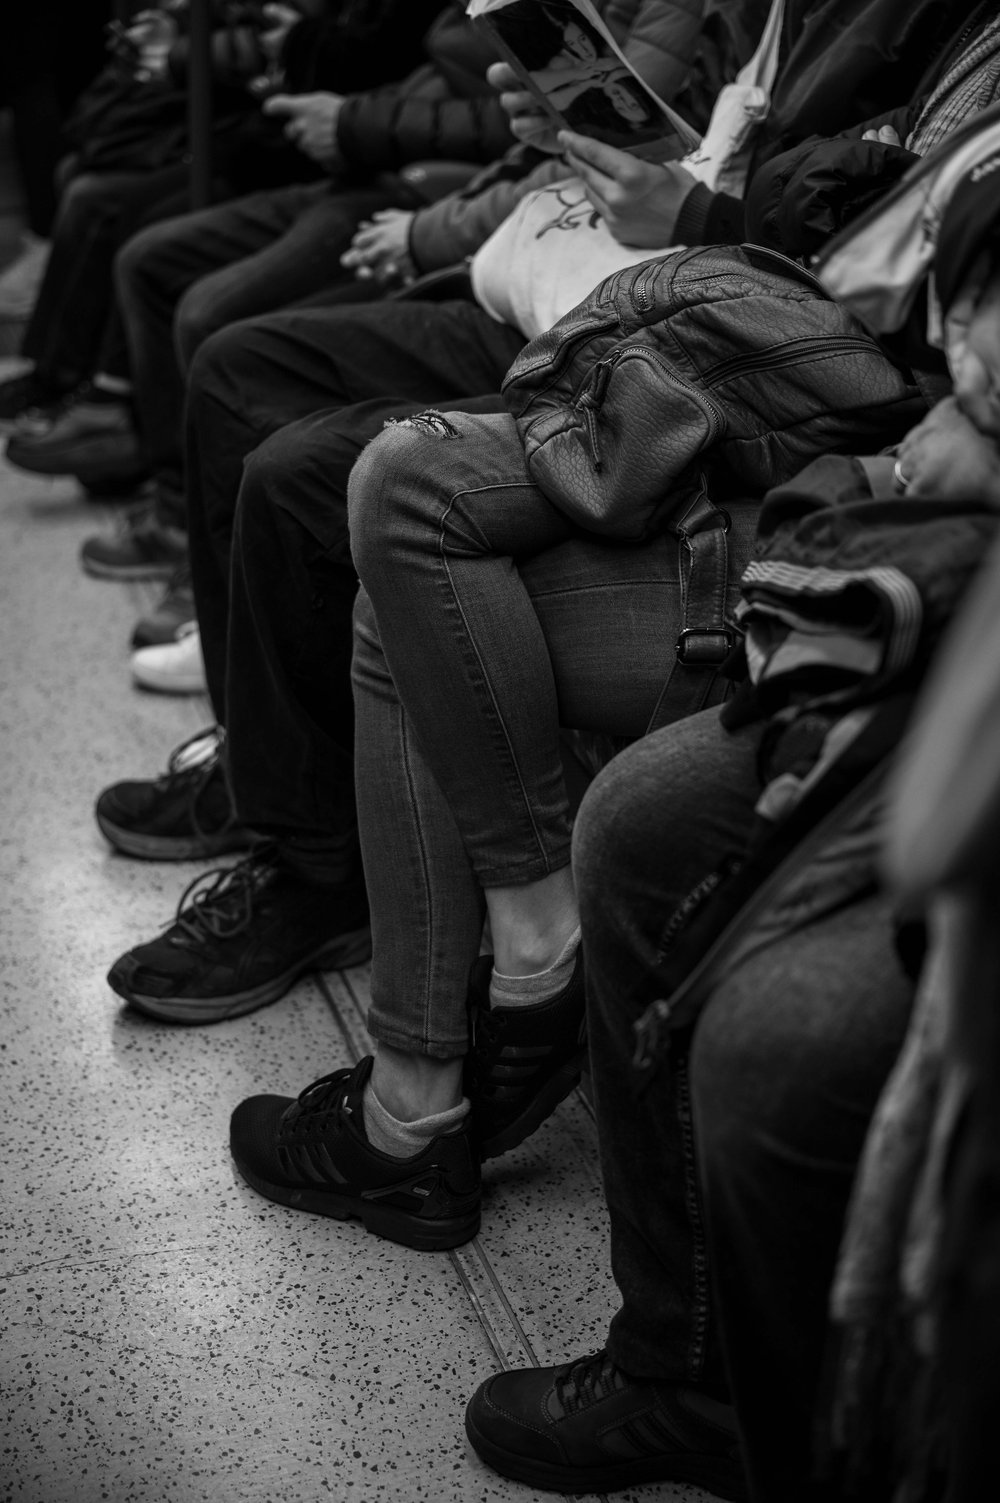 Fotos aus der Londoner U-Bahn Tube zeigen das Leben der Engländer hautnah (4)